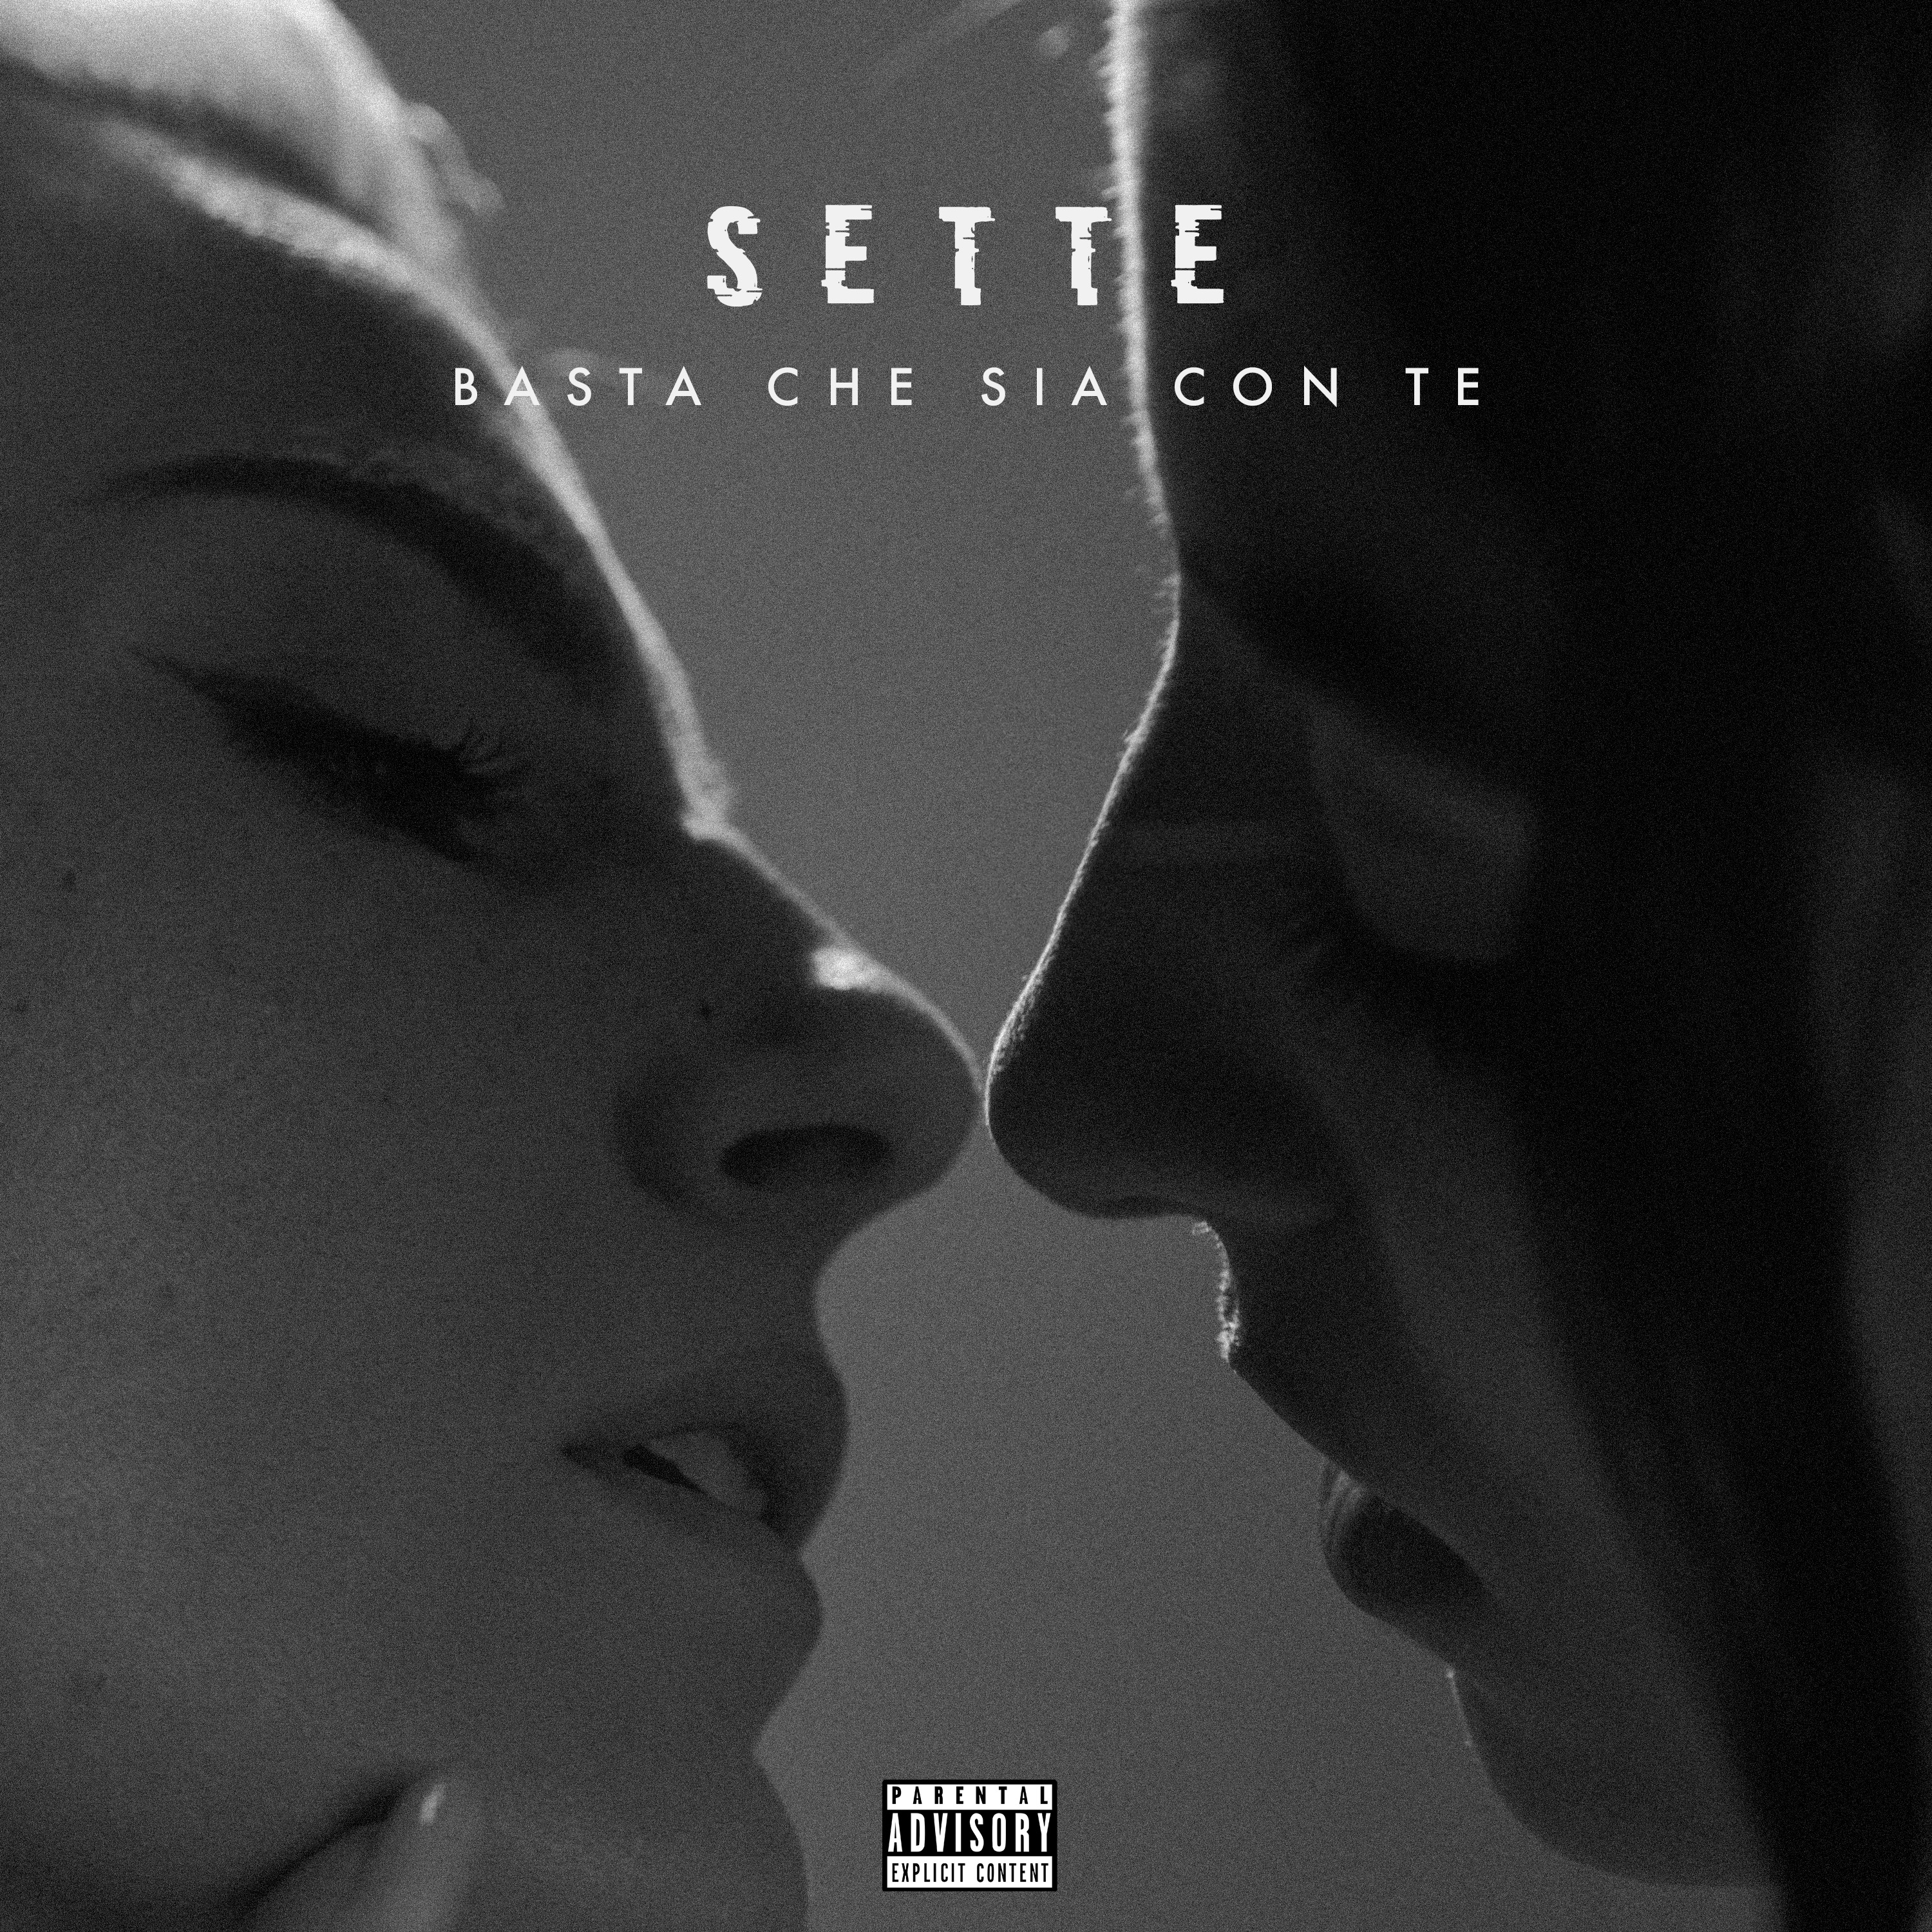 SETTE “Basta che sia con te” è il nuovo singolo dell'artista emiliano 